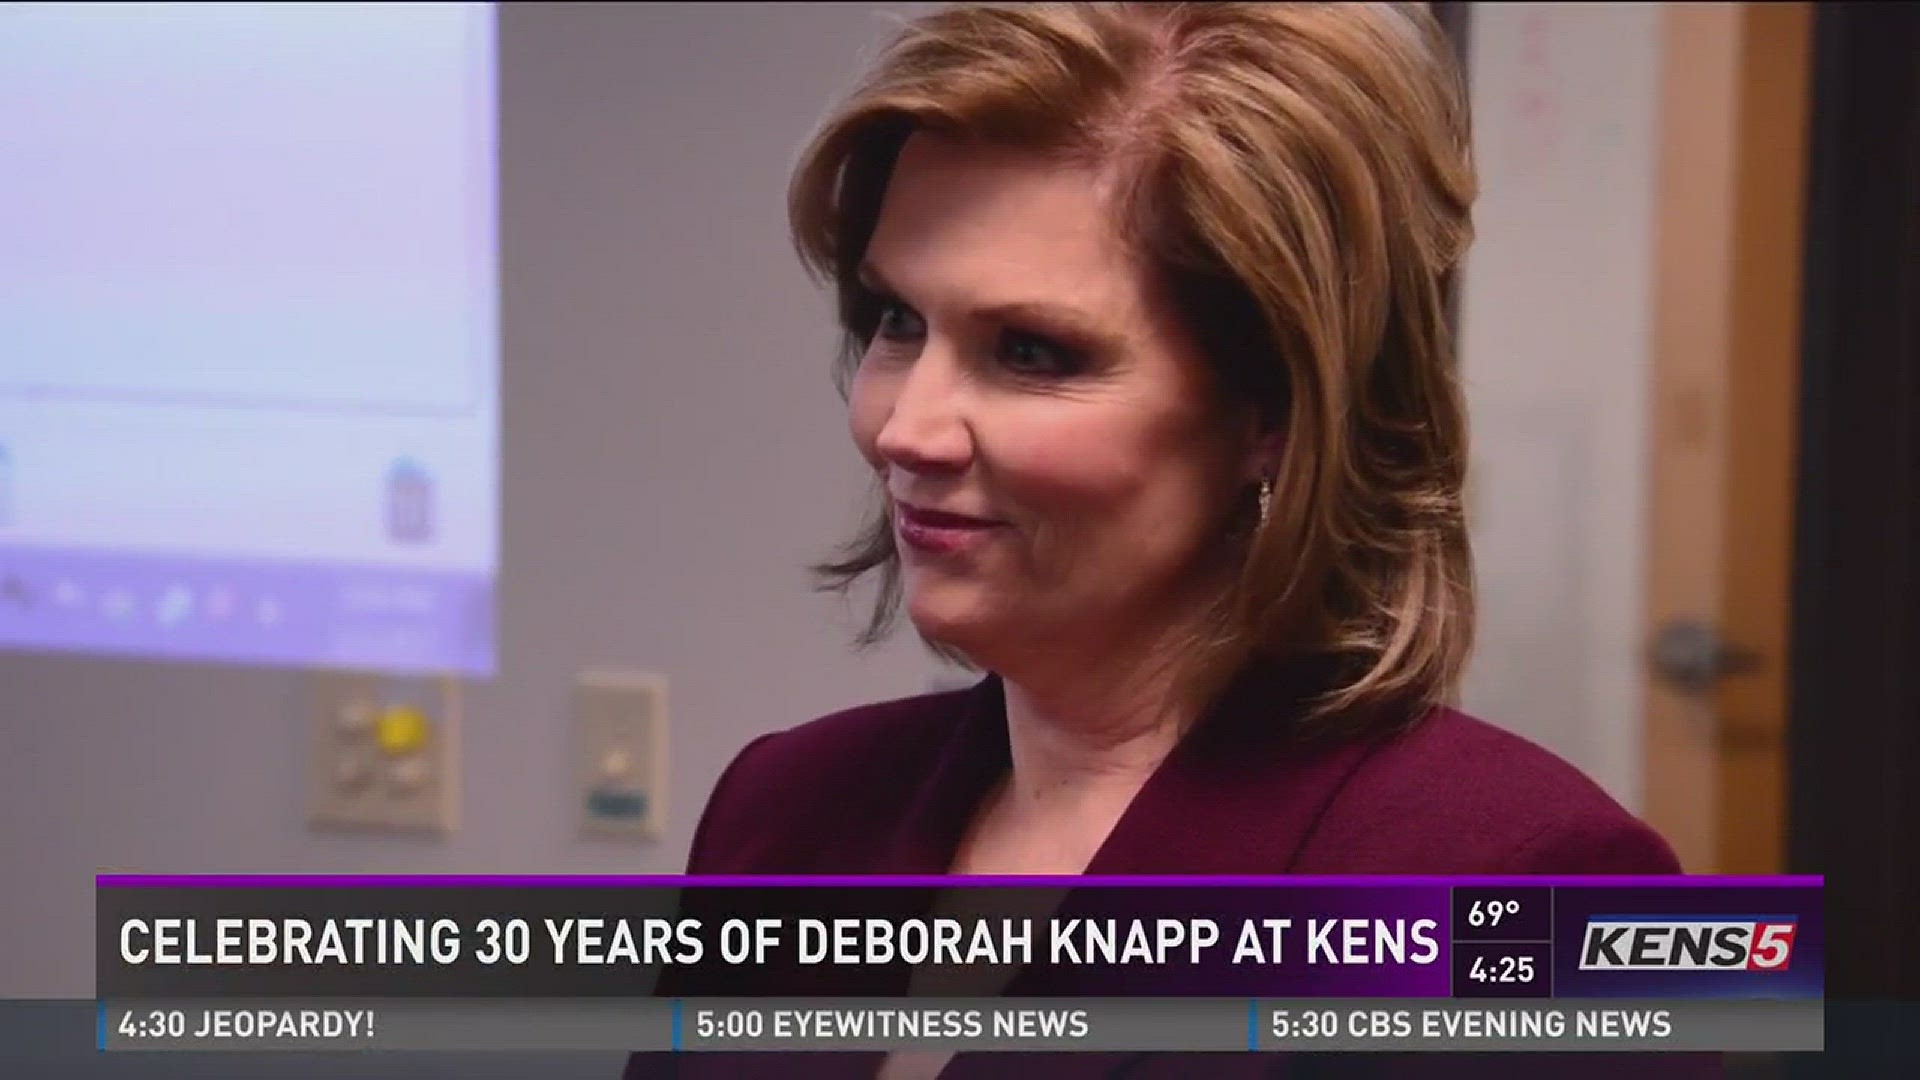 Celebrating 30 years of Deborah Knapp at KENS